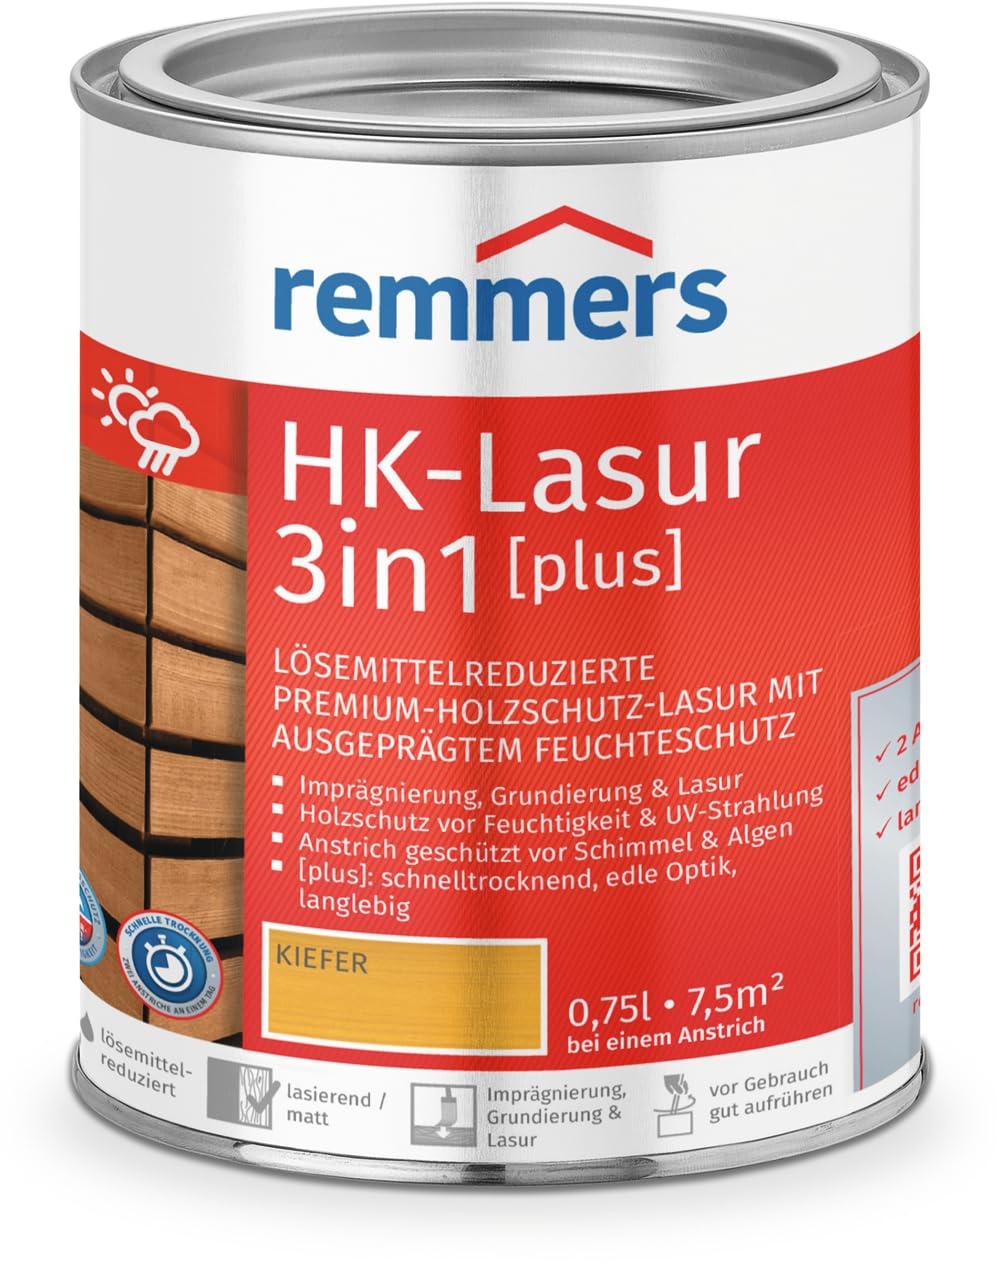 Remmers HK-Lasur 3in1 [plus] kiefer, matt, 0,75 Liter, Holzlasur, Premium Holzlasur außen, 3fach Holzschutz mit Imprägnierung + Grundierung + Lasur